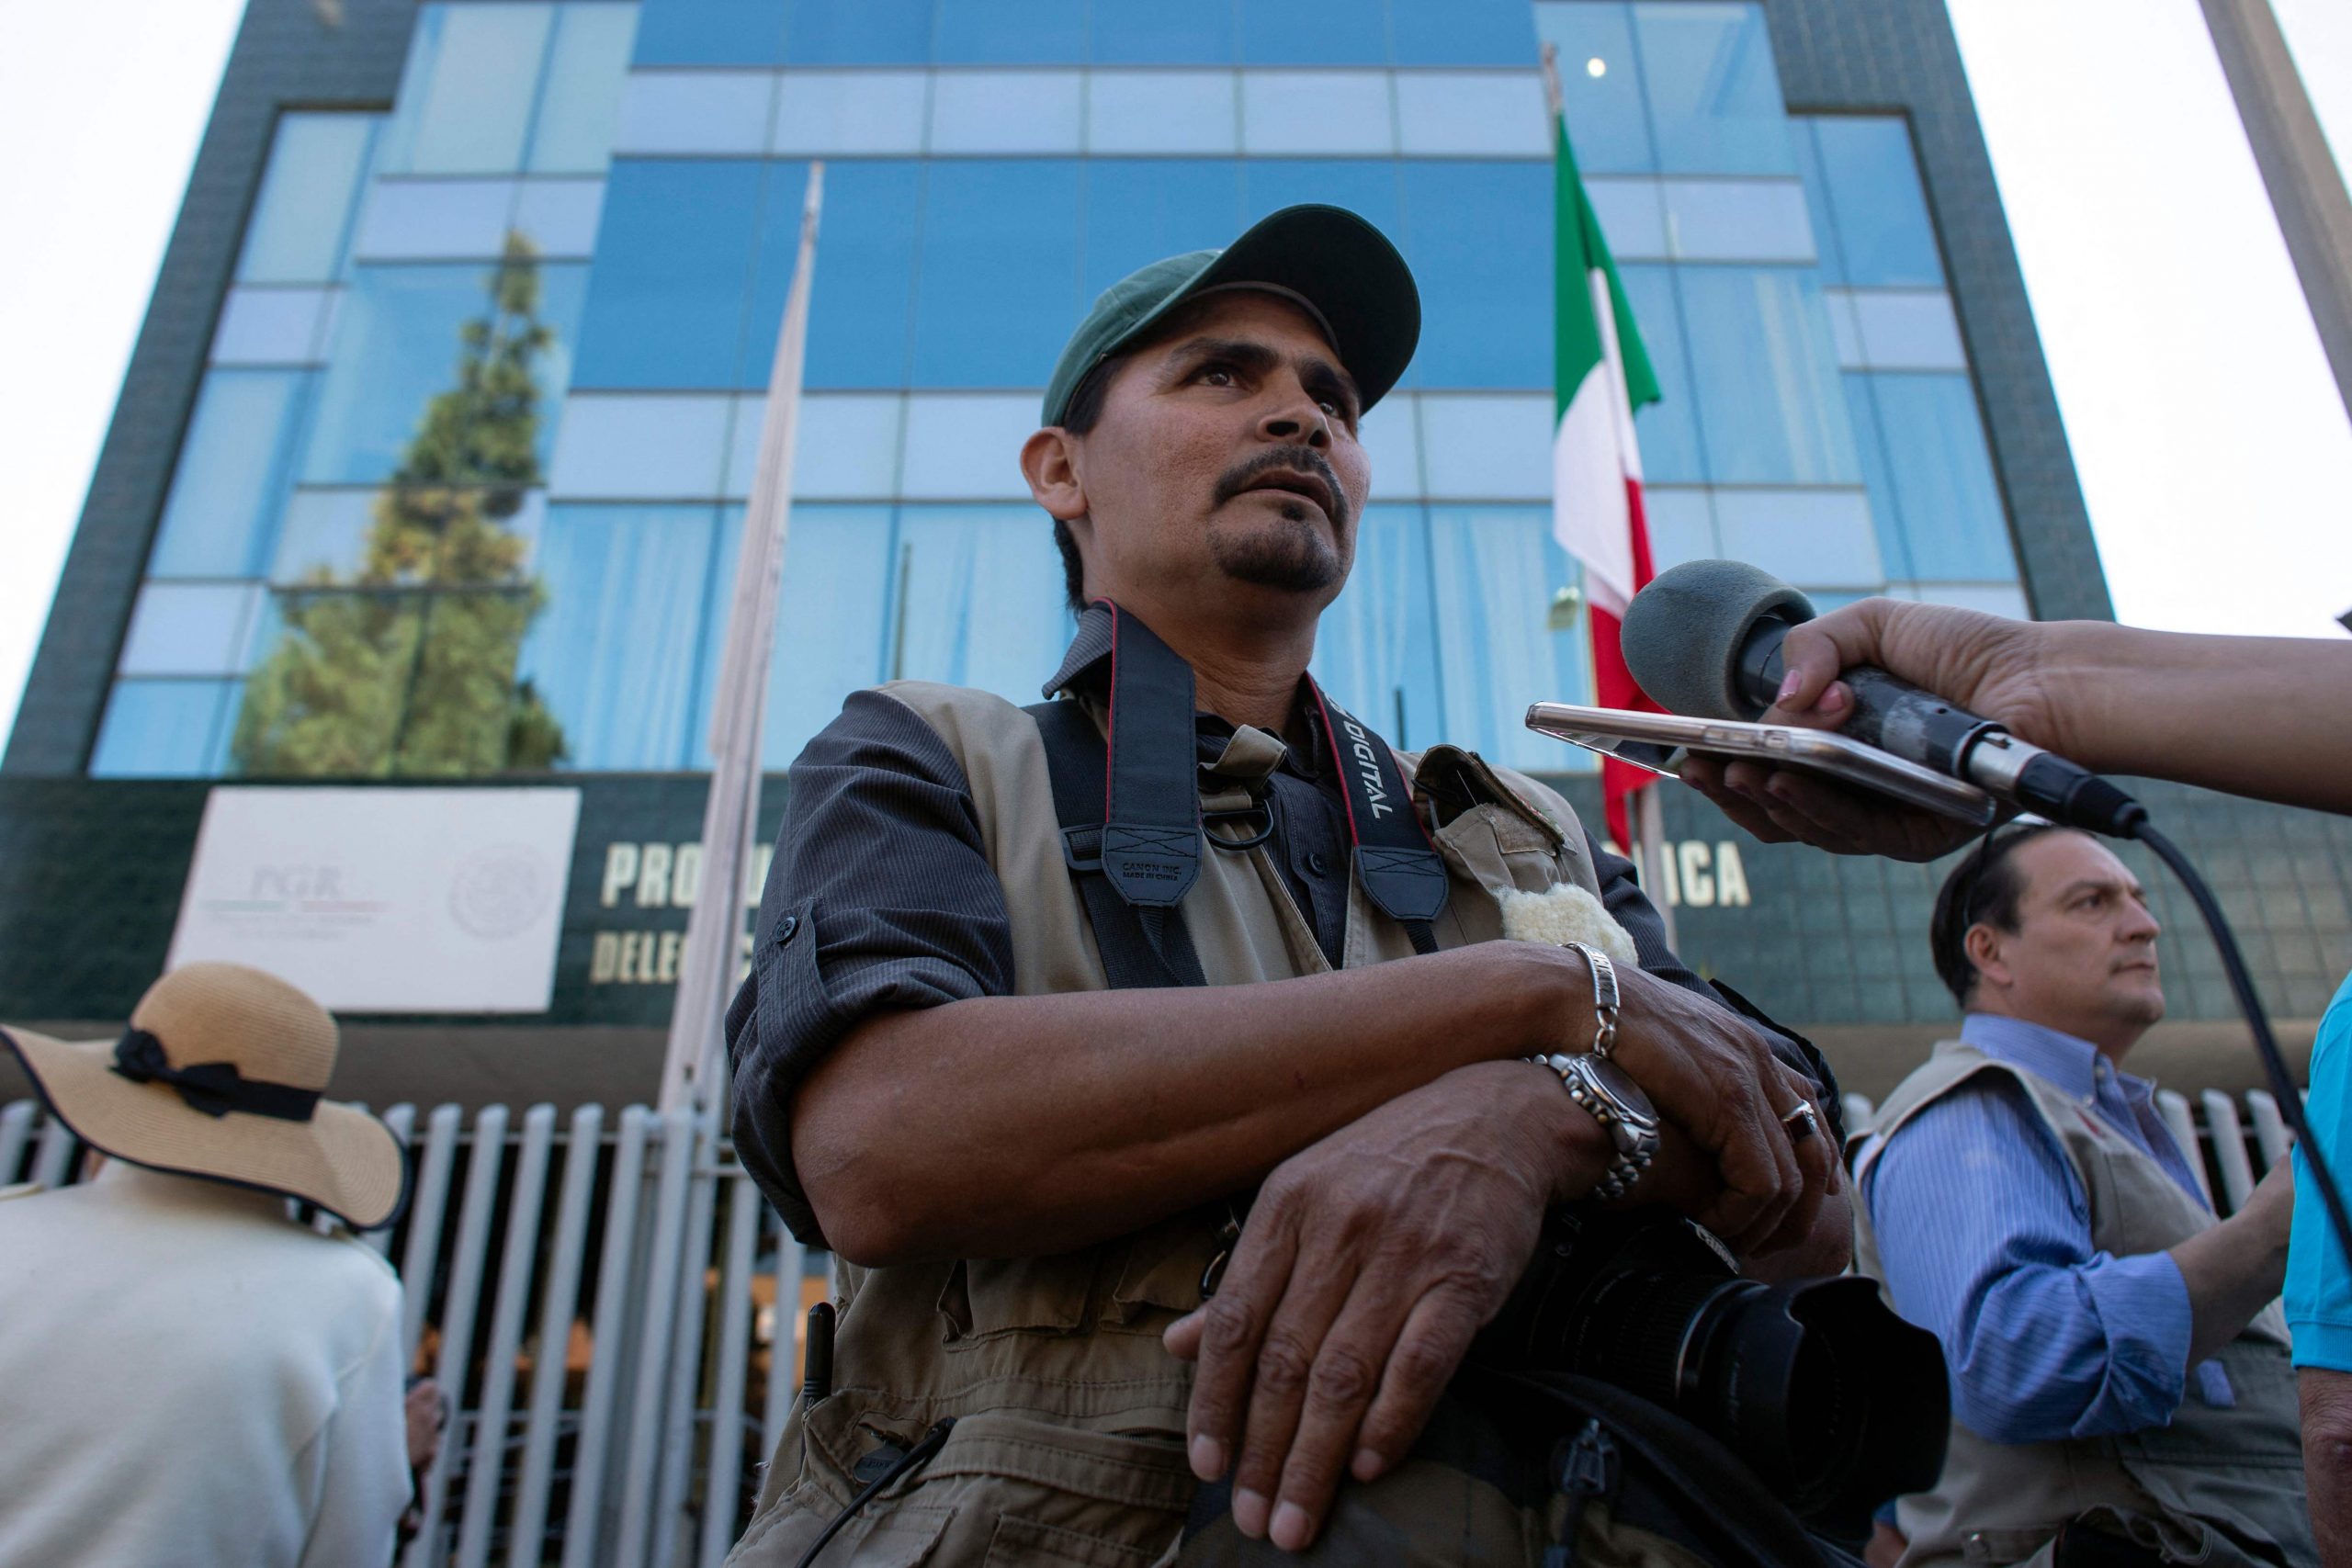 看世界2 ／摄影记者墨西哥边城遇害 传先前遭犯罪组织恐吓